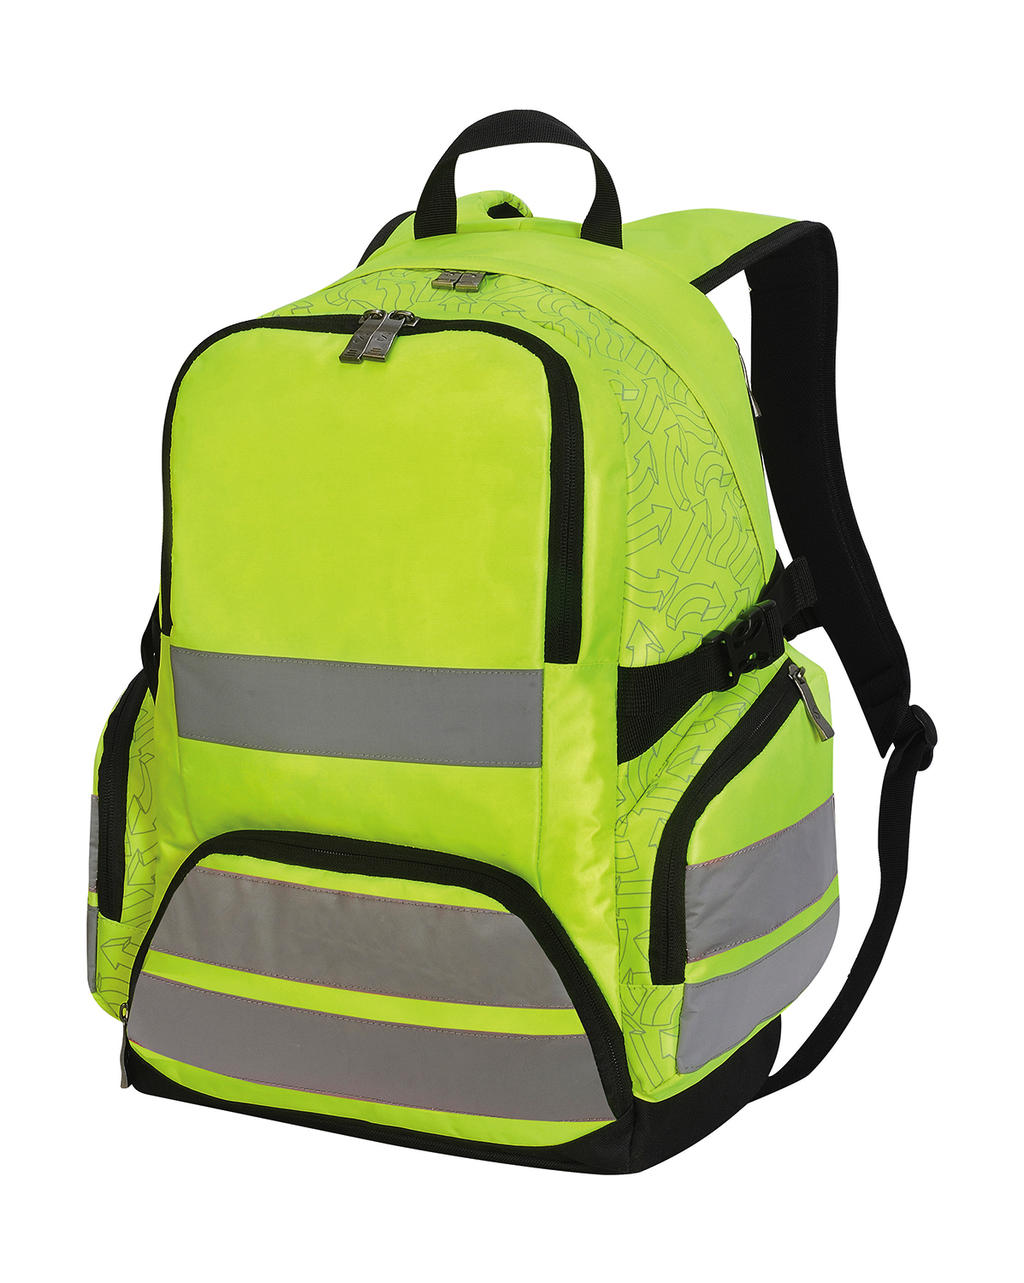  London Hi-Vis Backpack  in Farbe Hi-Vis Yellow